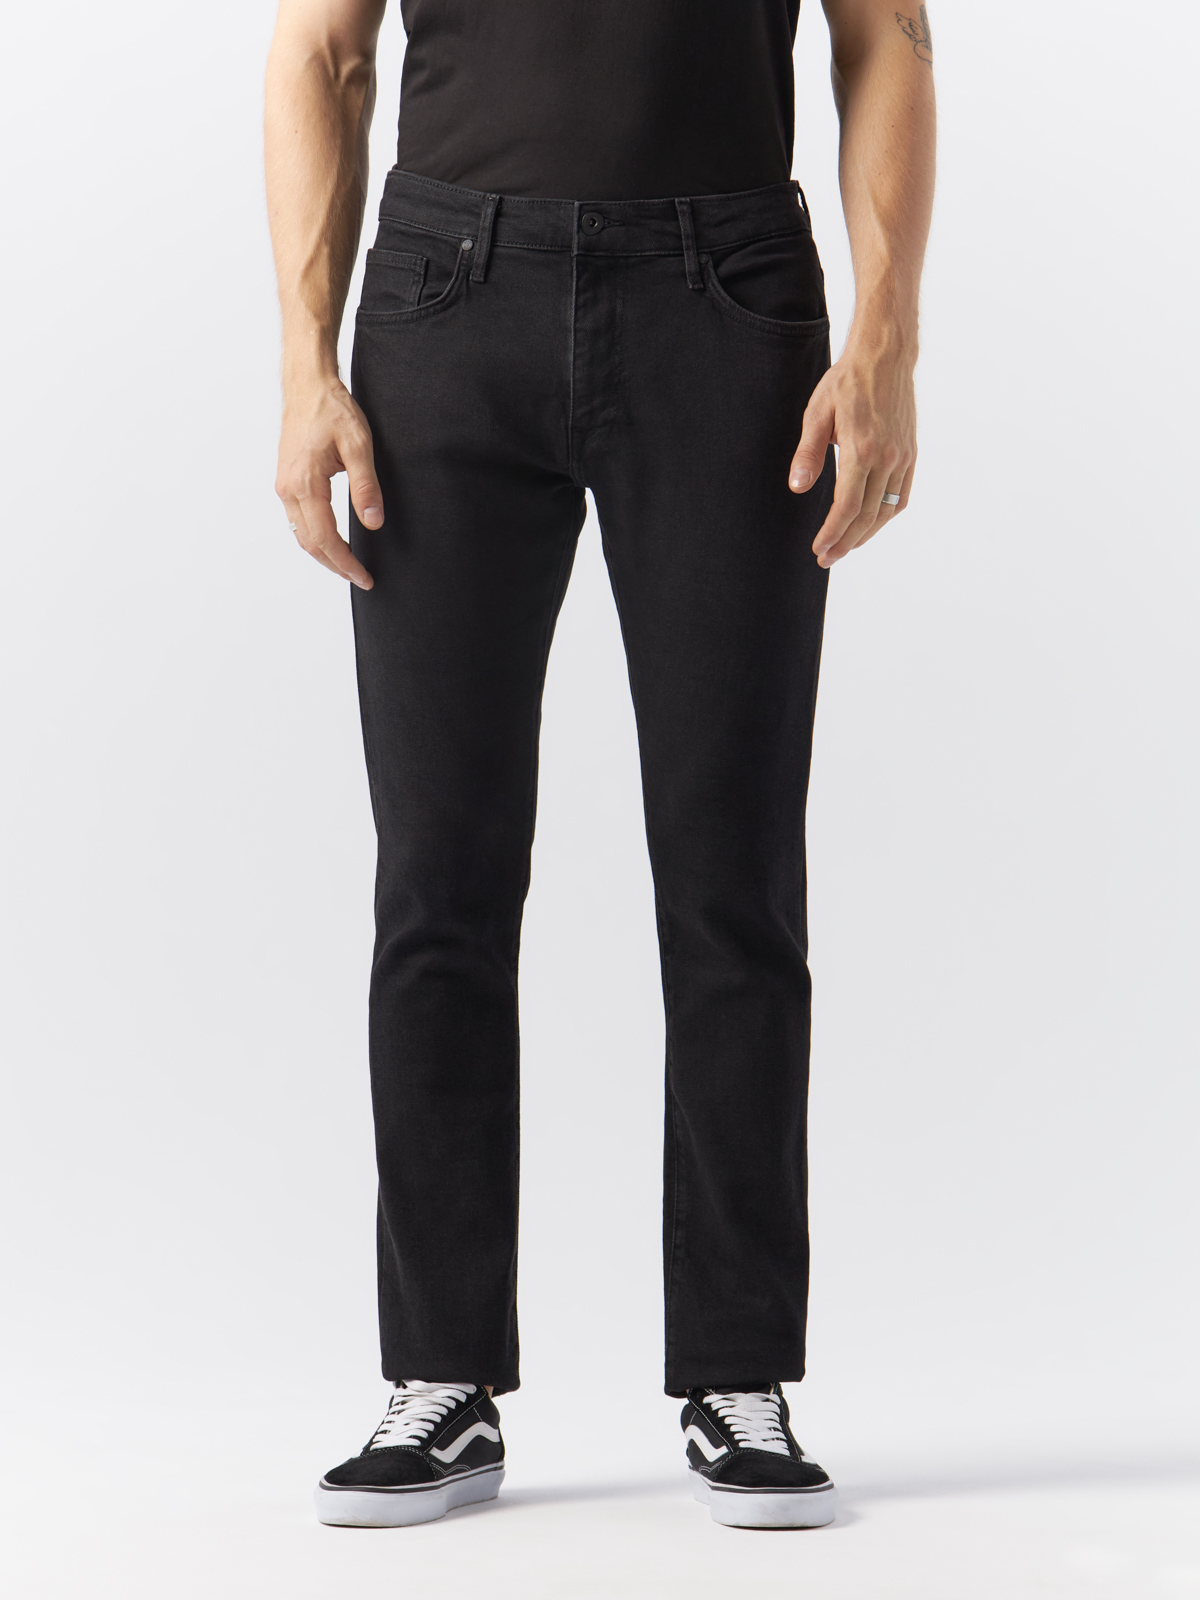 Джинсы Cross Jeans для мужчин, E 185-171, размер 32/32, чёрные